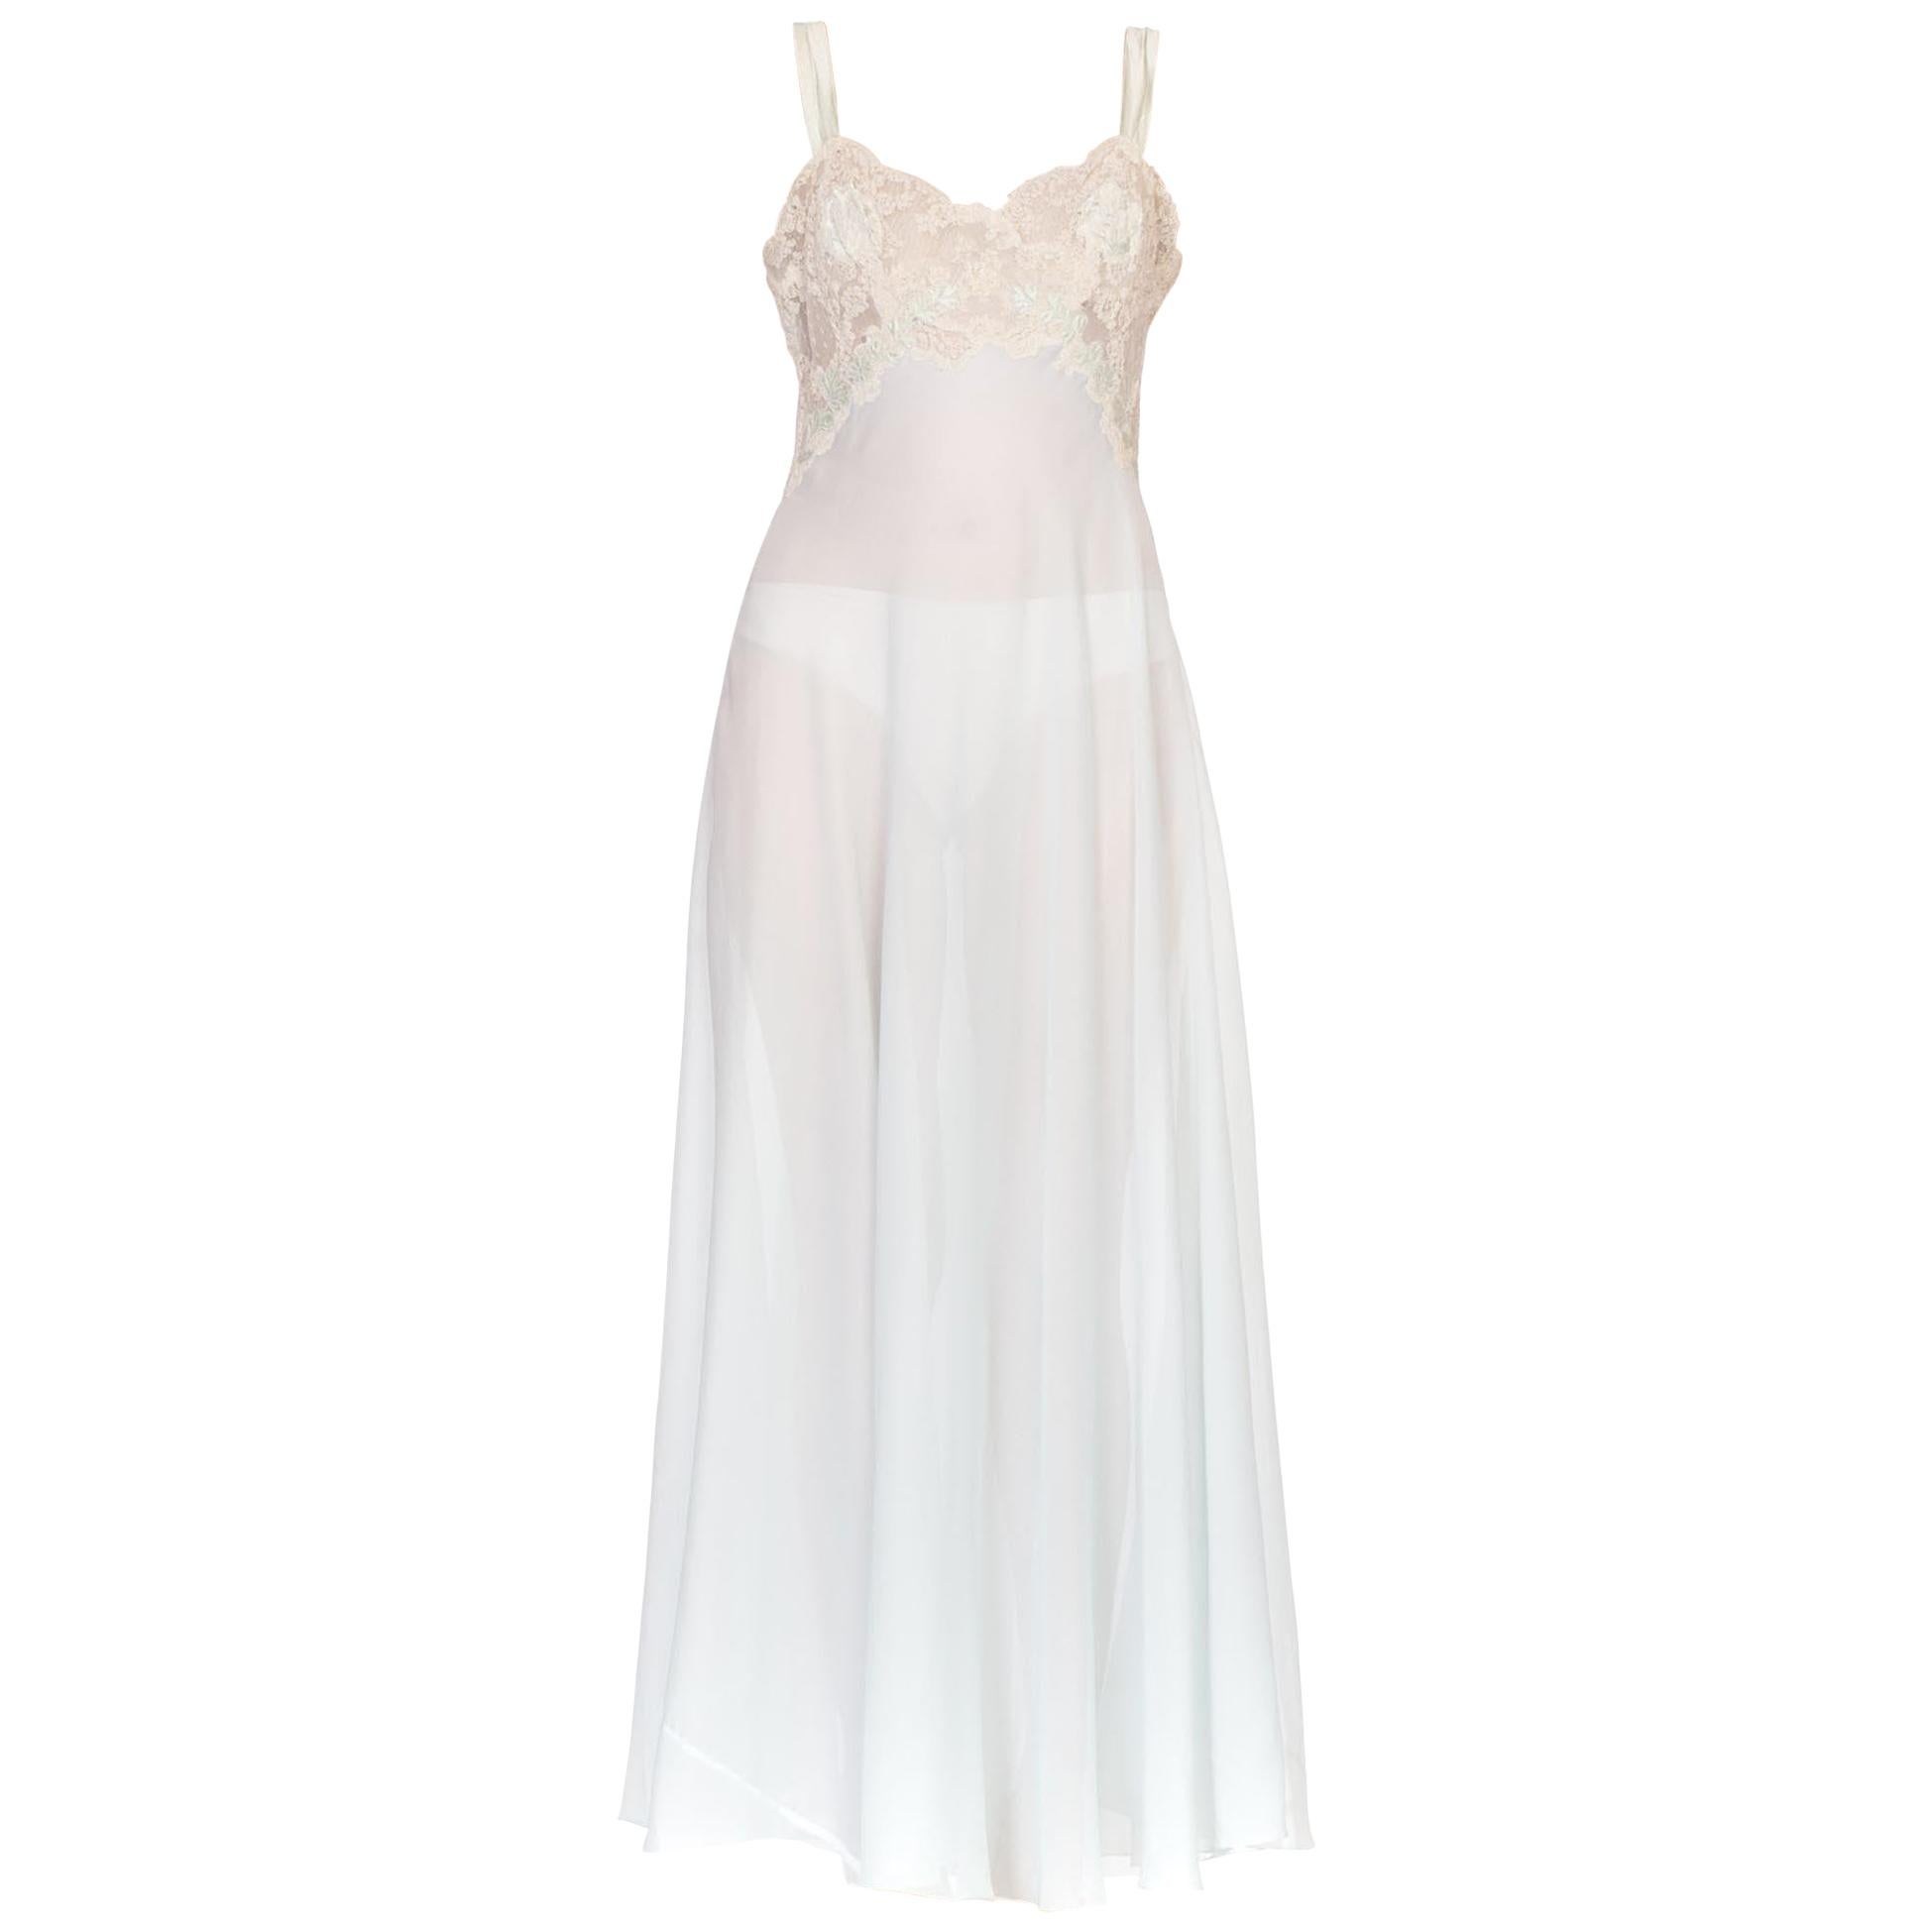 1950's Nylon & Lace Lingerie Slip Dress With Silk Applique